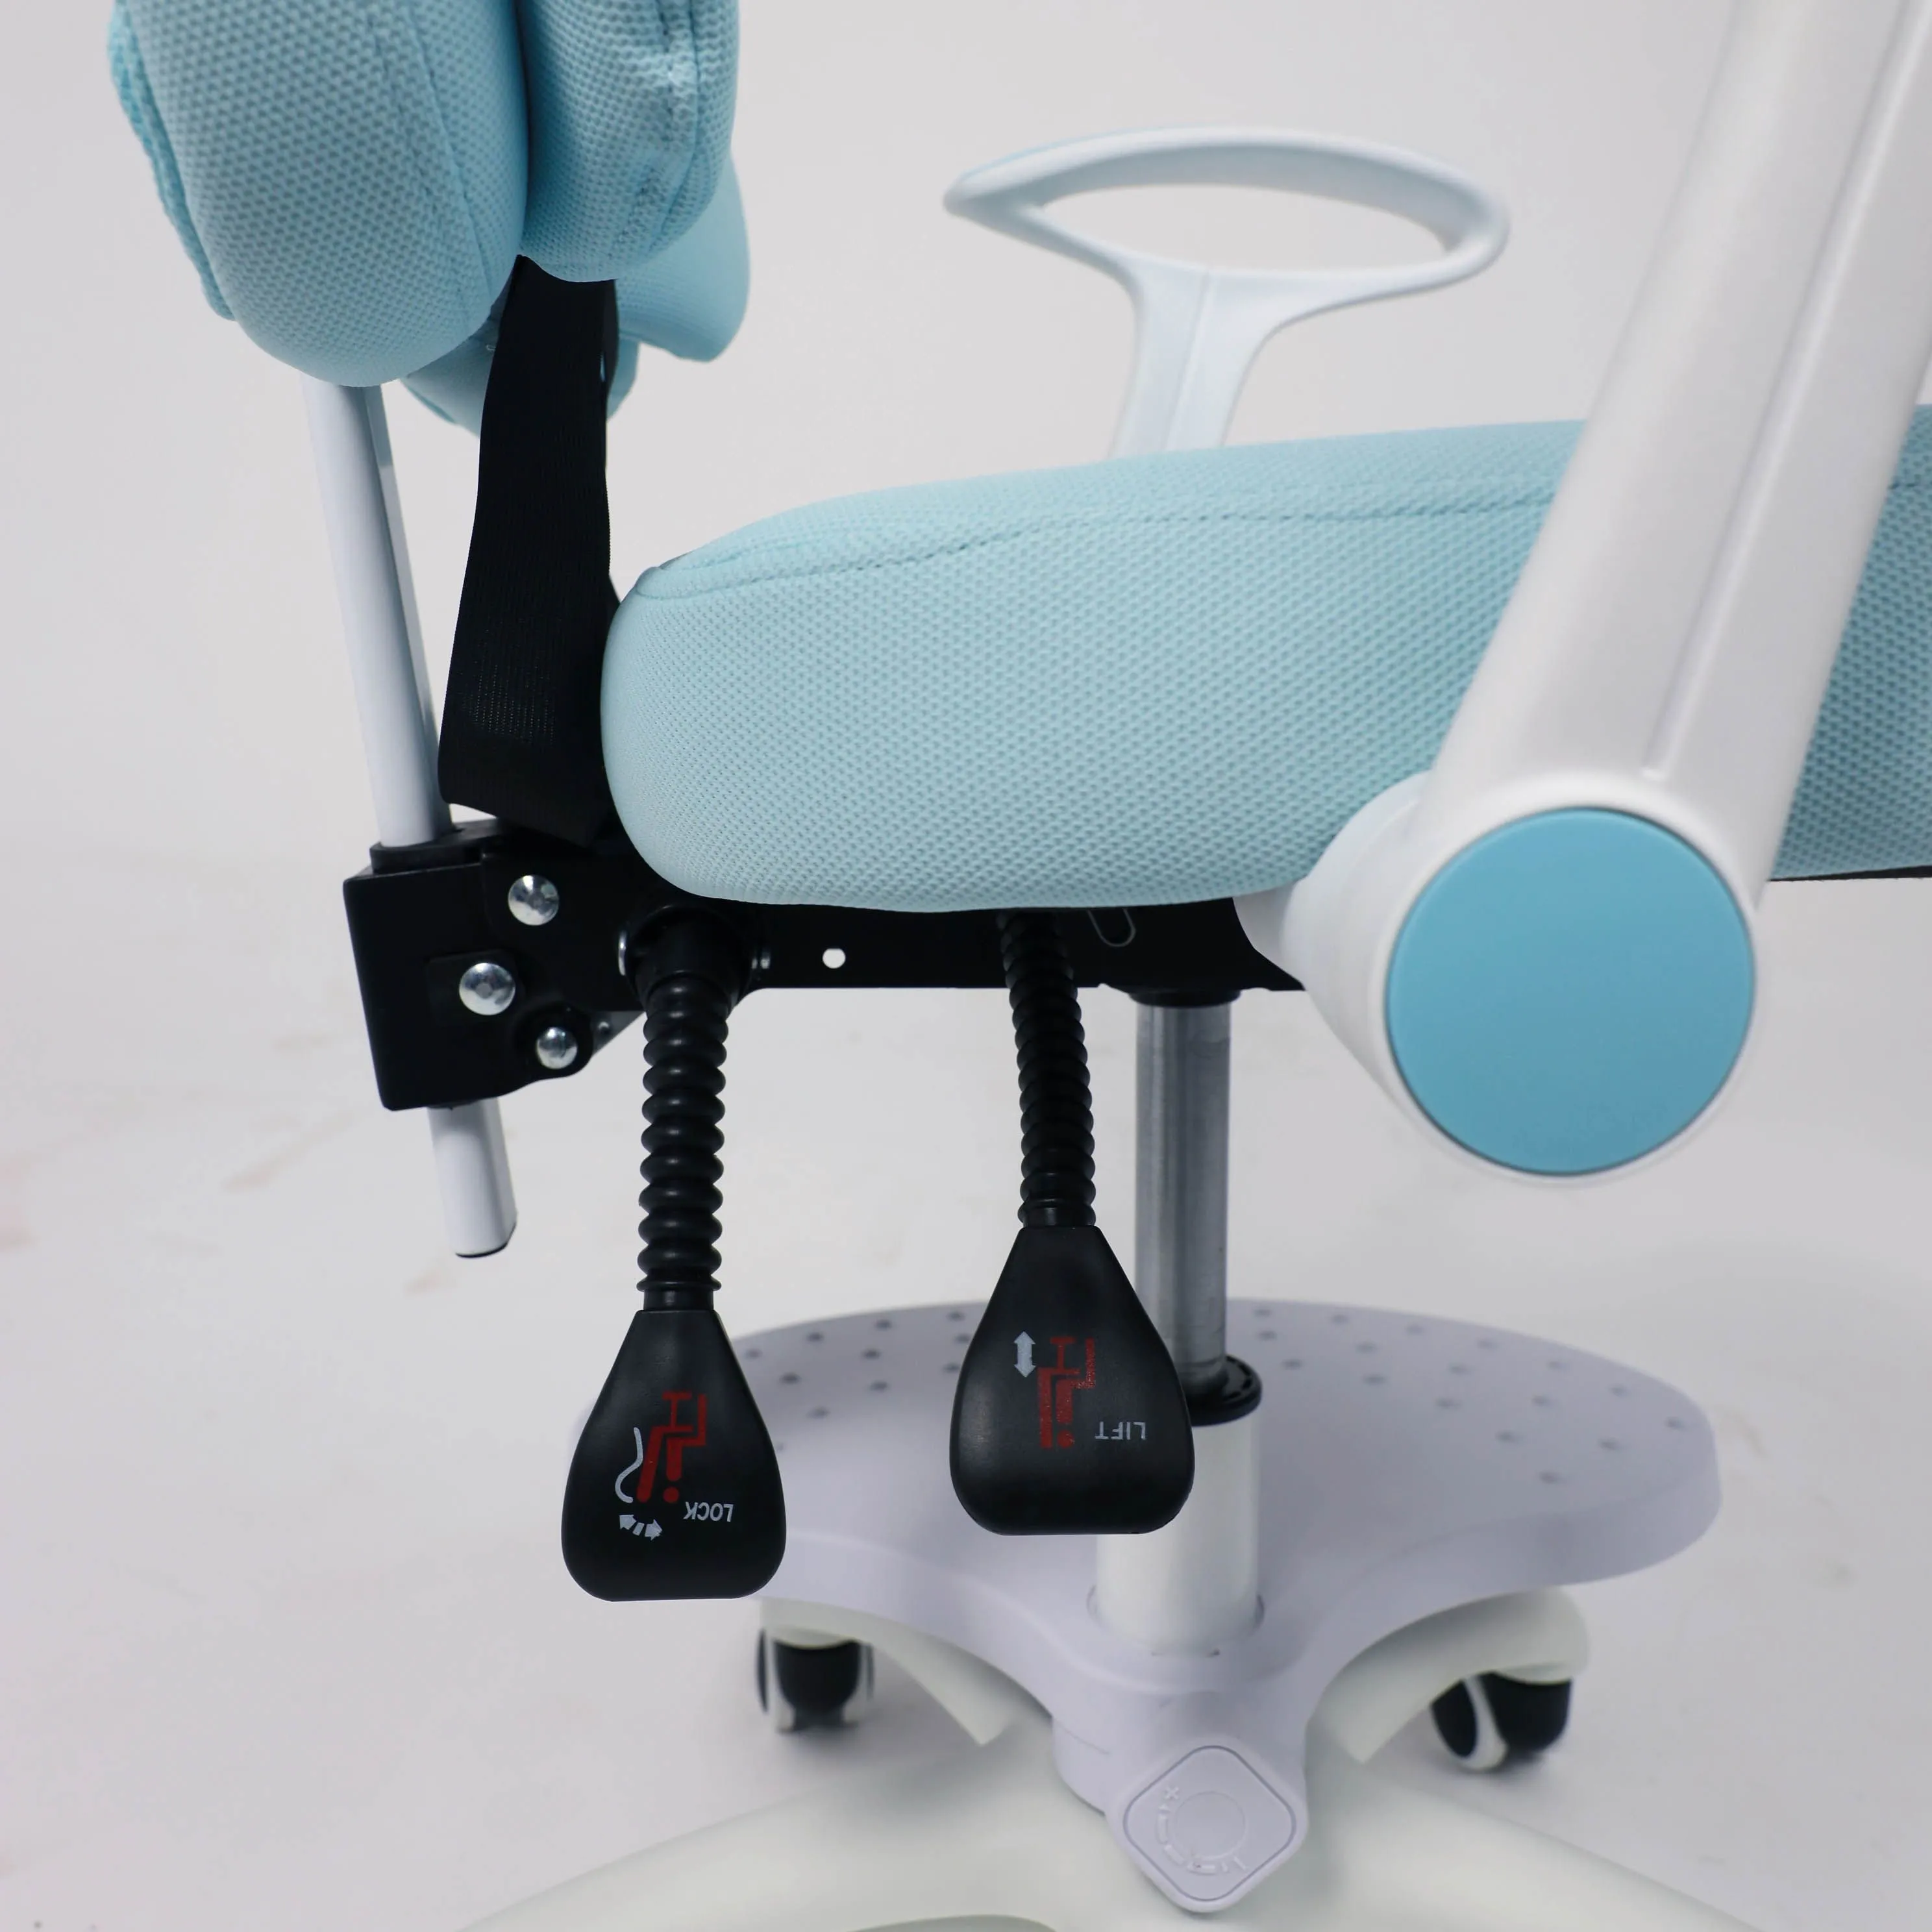 Кресло компьютерное детское LOLU ткань синий 102541